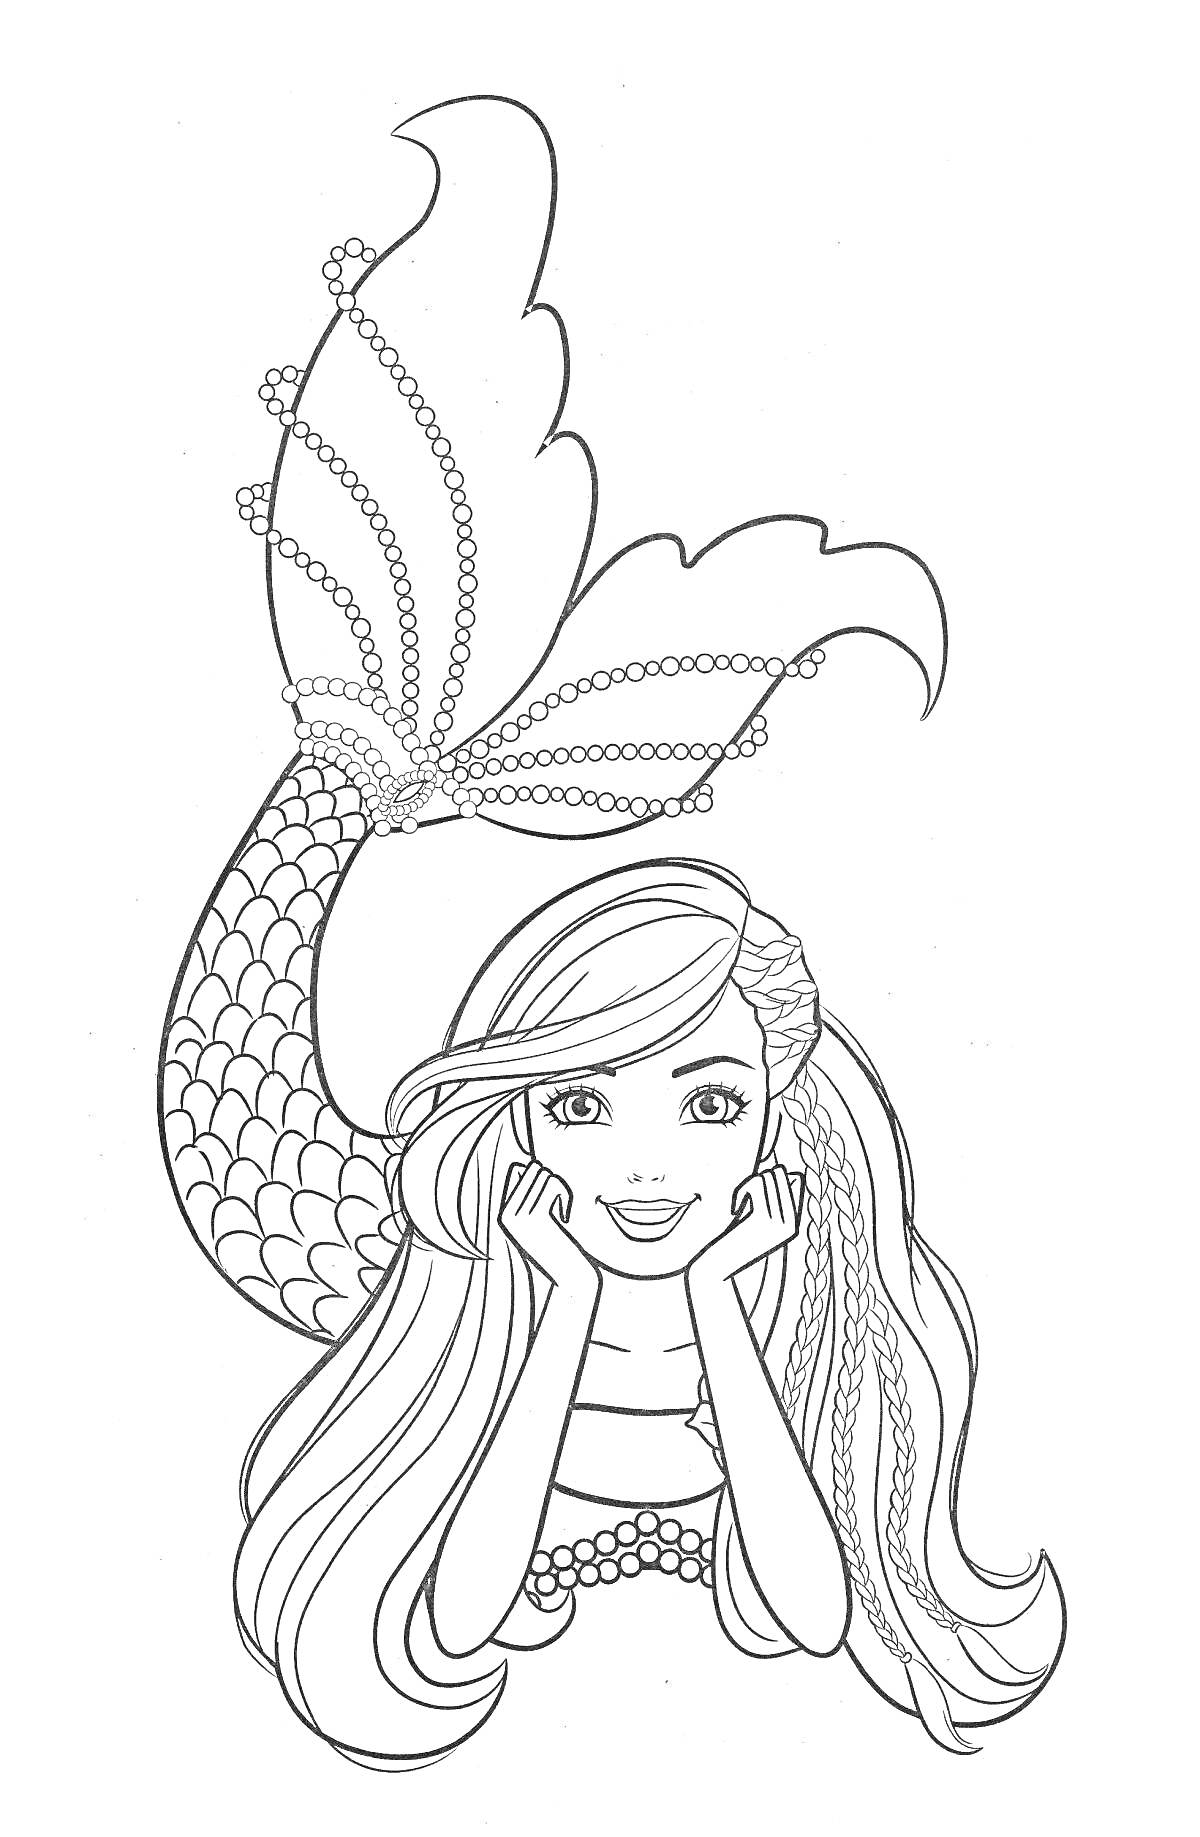 Раскраска Королева русалка с длинными волосами, чье тело украшено чешуйками и бисерными украшениями. Русалка располагается в воде.